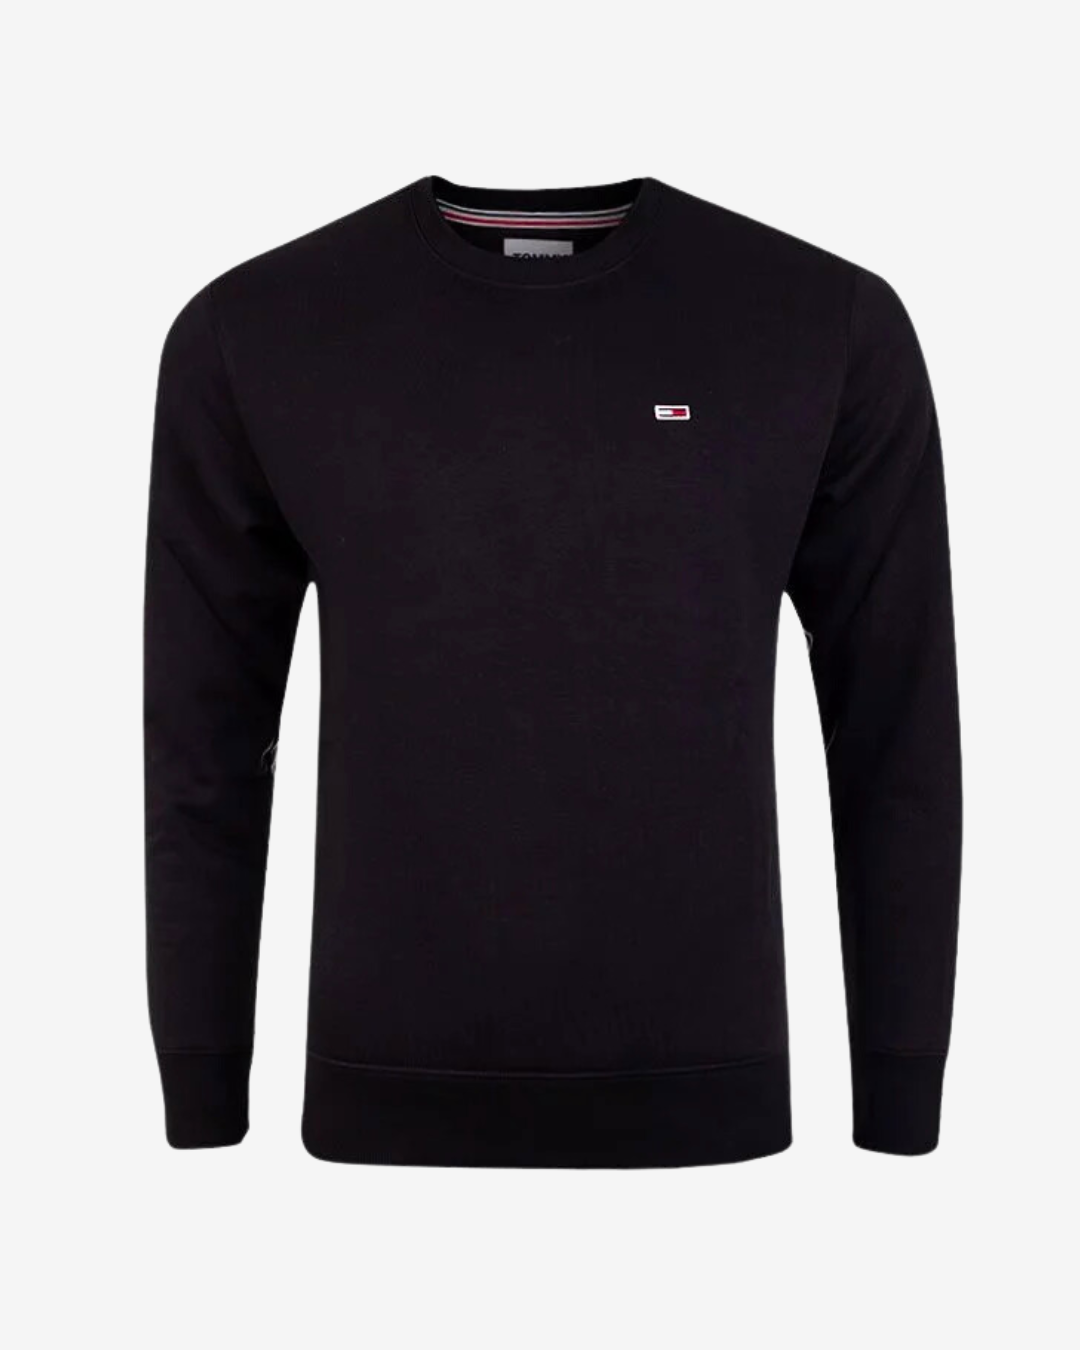 Se Tommy Hilfiger Original logo sweatshirt - Sort - Str. M - Modish.dk hos Modish.dk